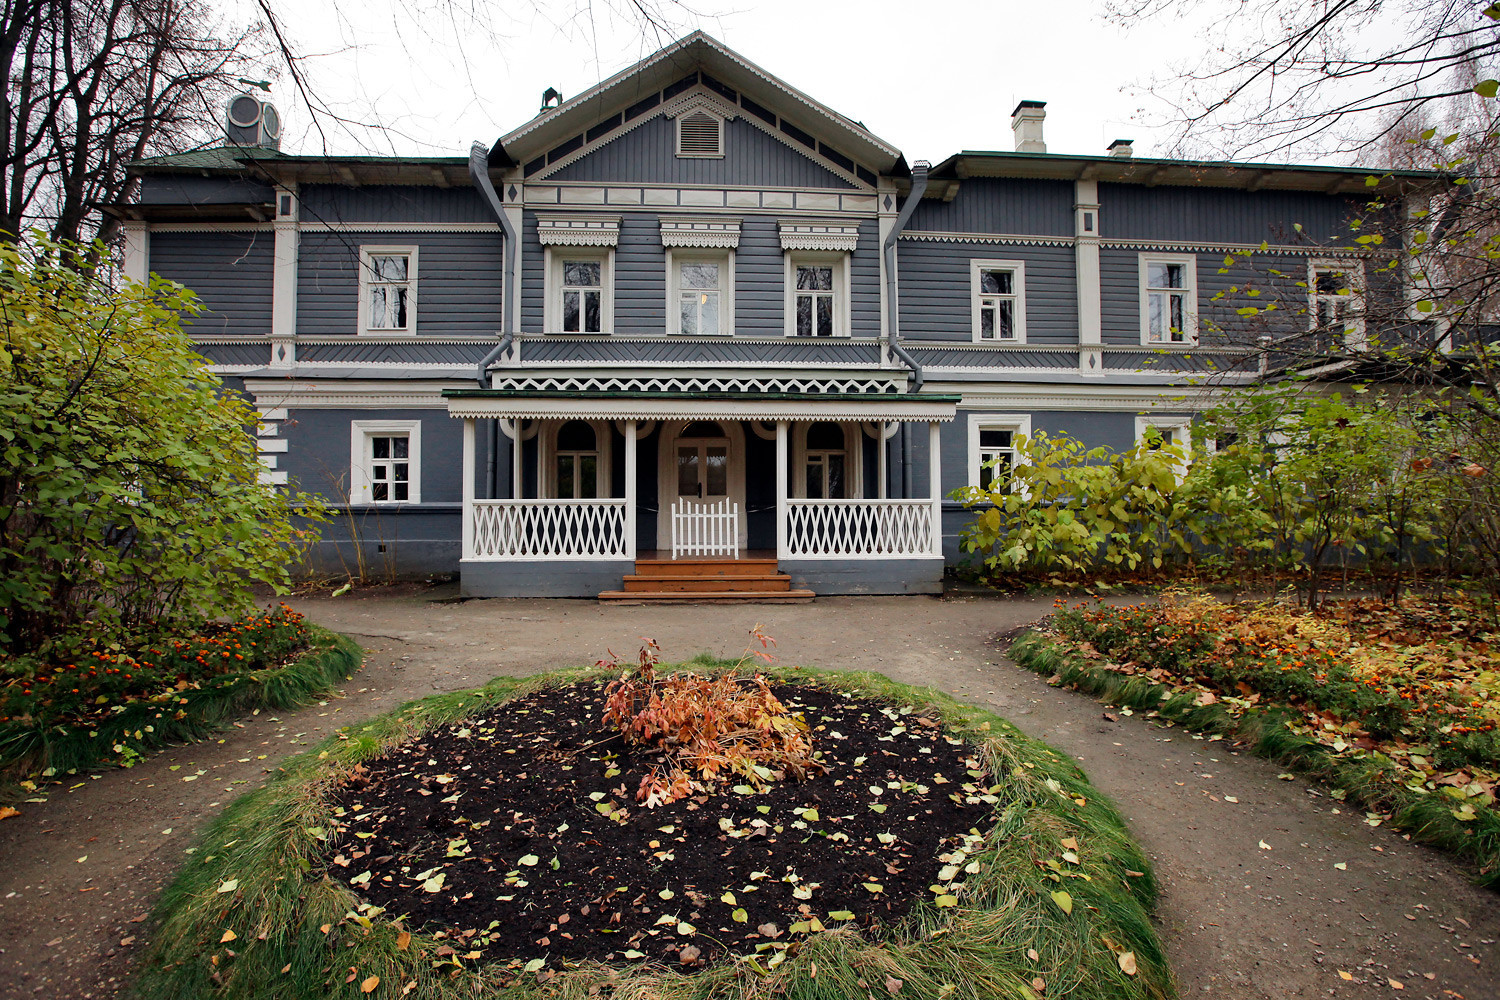 Rumah-museum komposer Pyotr Tchaikovsky.